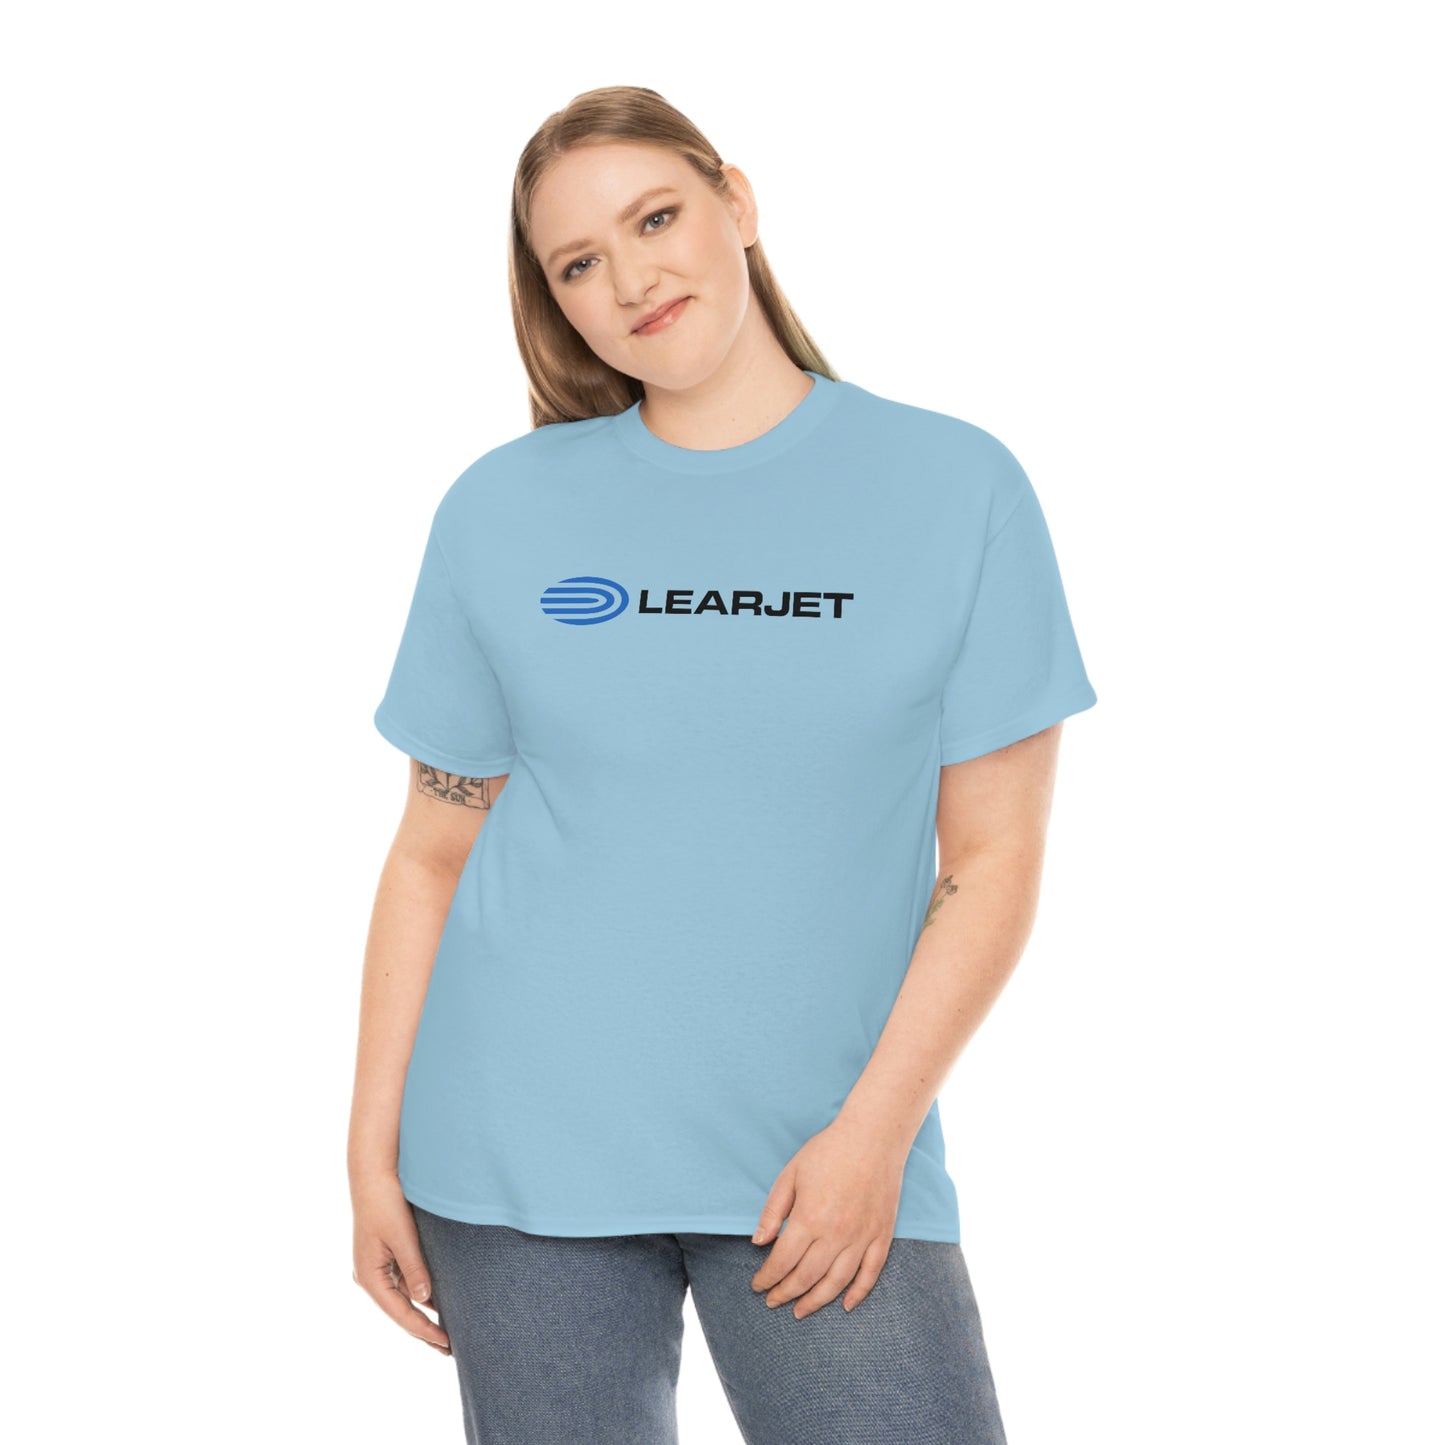 Learjet T-Shirt